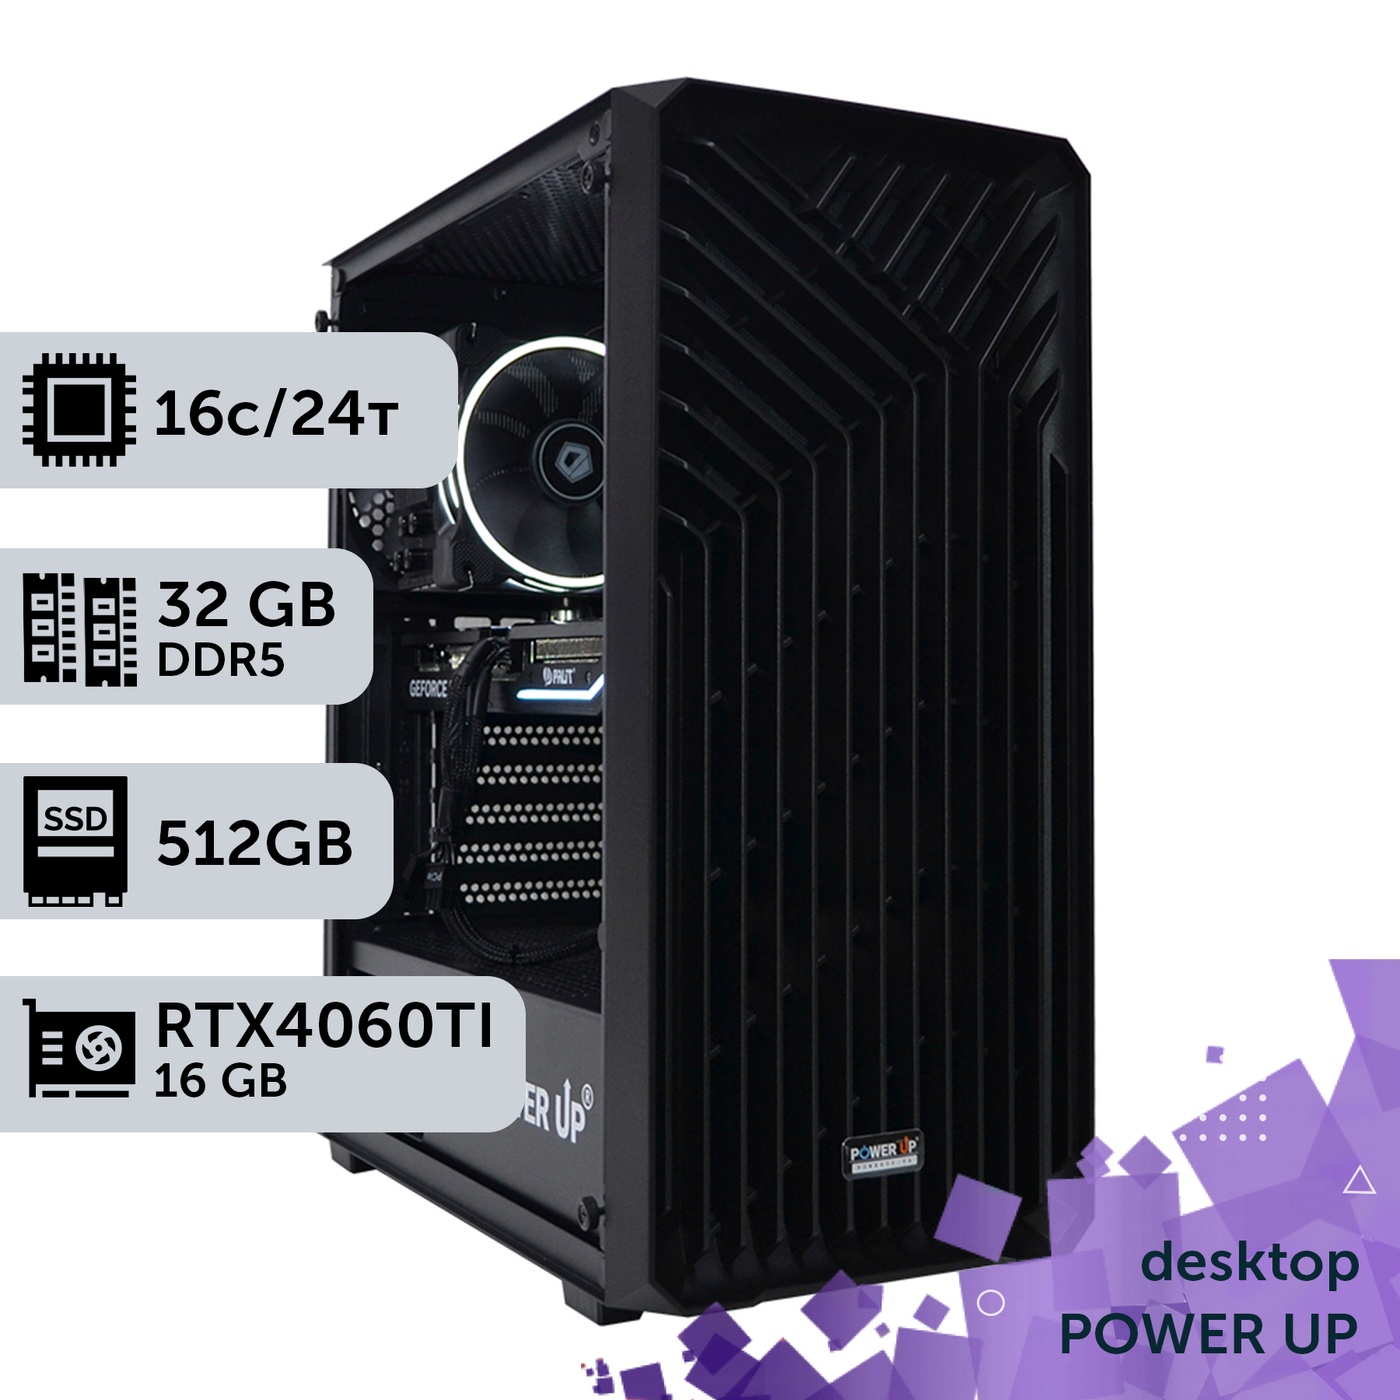 Робоча станція PowerUp Desktop #290 Core i7 13700K/32 GB/SSD 512GB/GeForce RTX 4060Ti 16GB